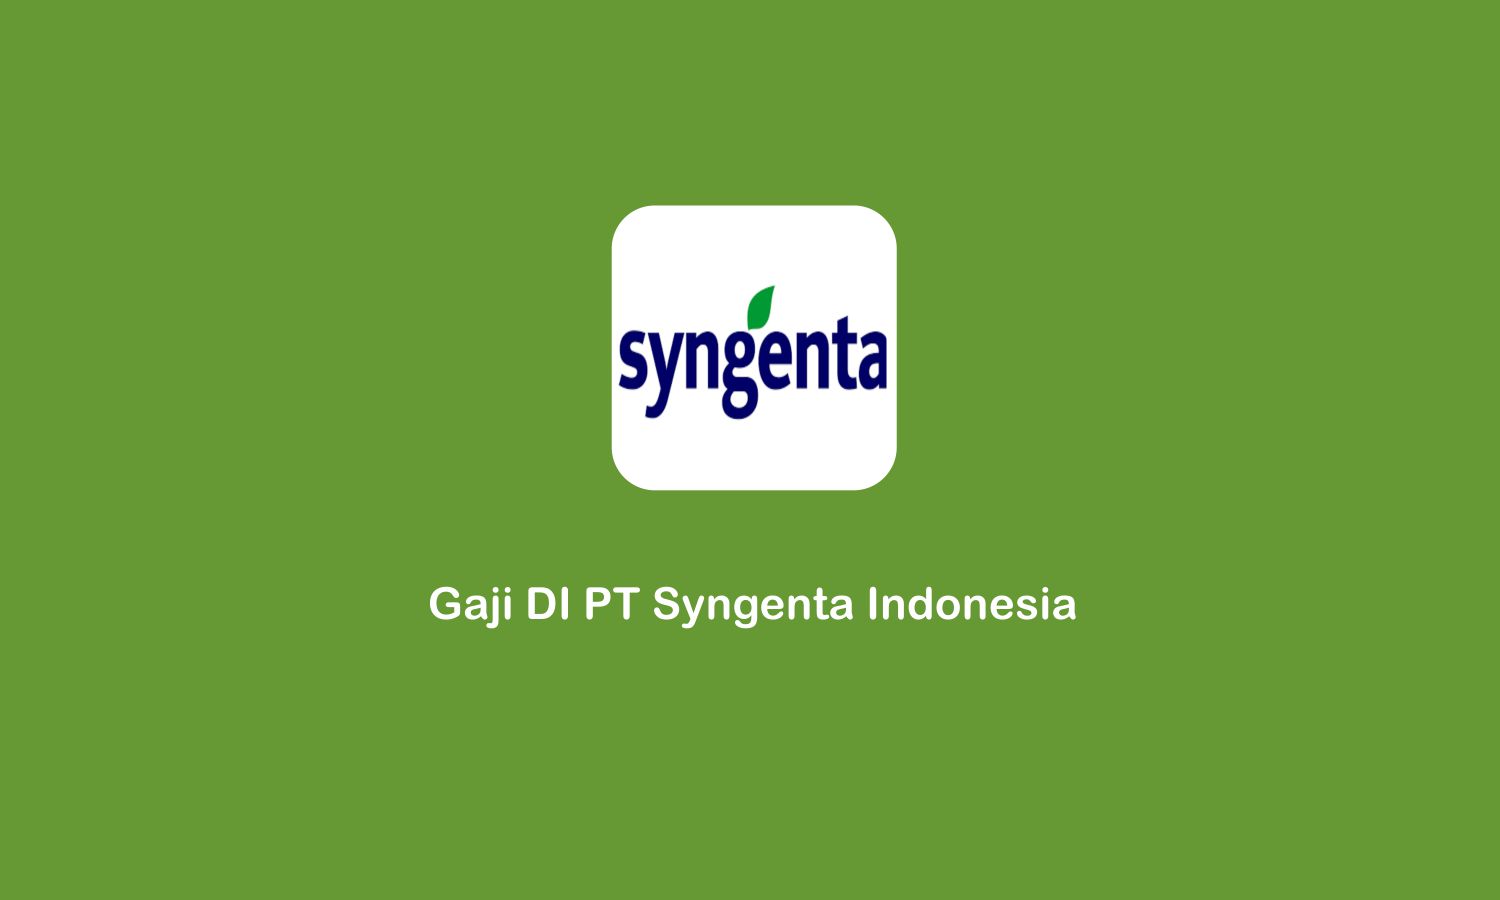 gaji di PT Syngenta Indonesia